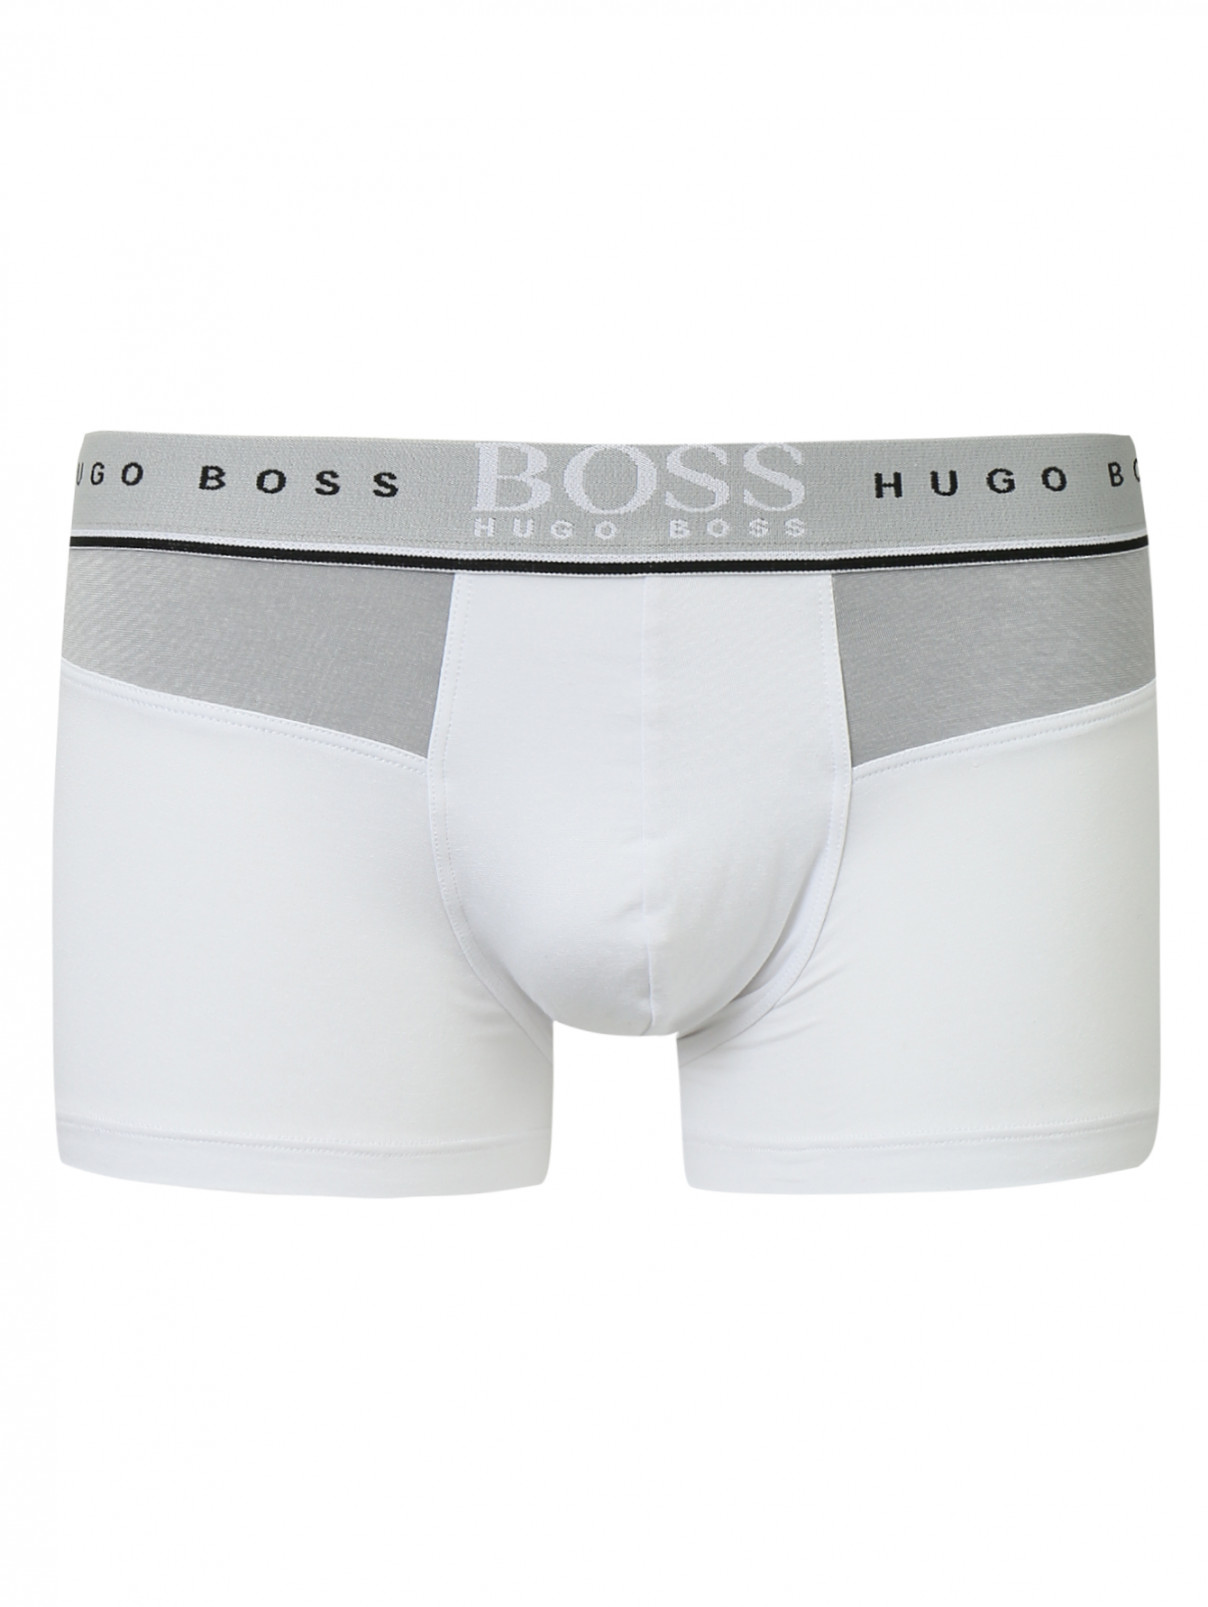 Трусы из хлопка Hugo Boss  –  Общий вид  – Цвет:  Белый